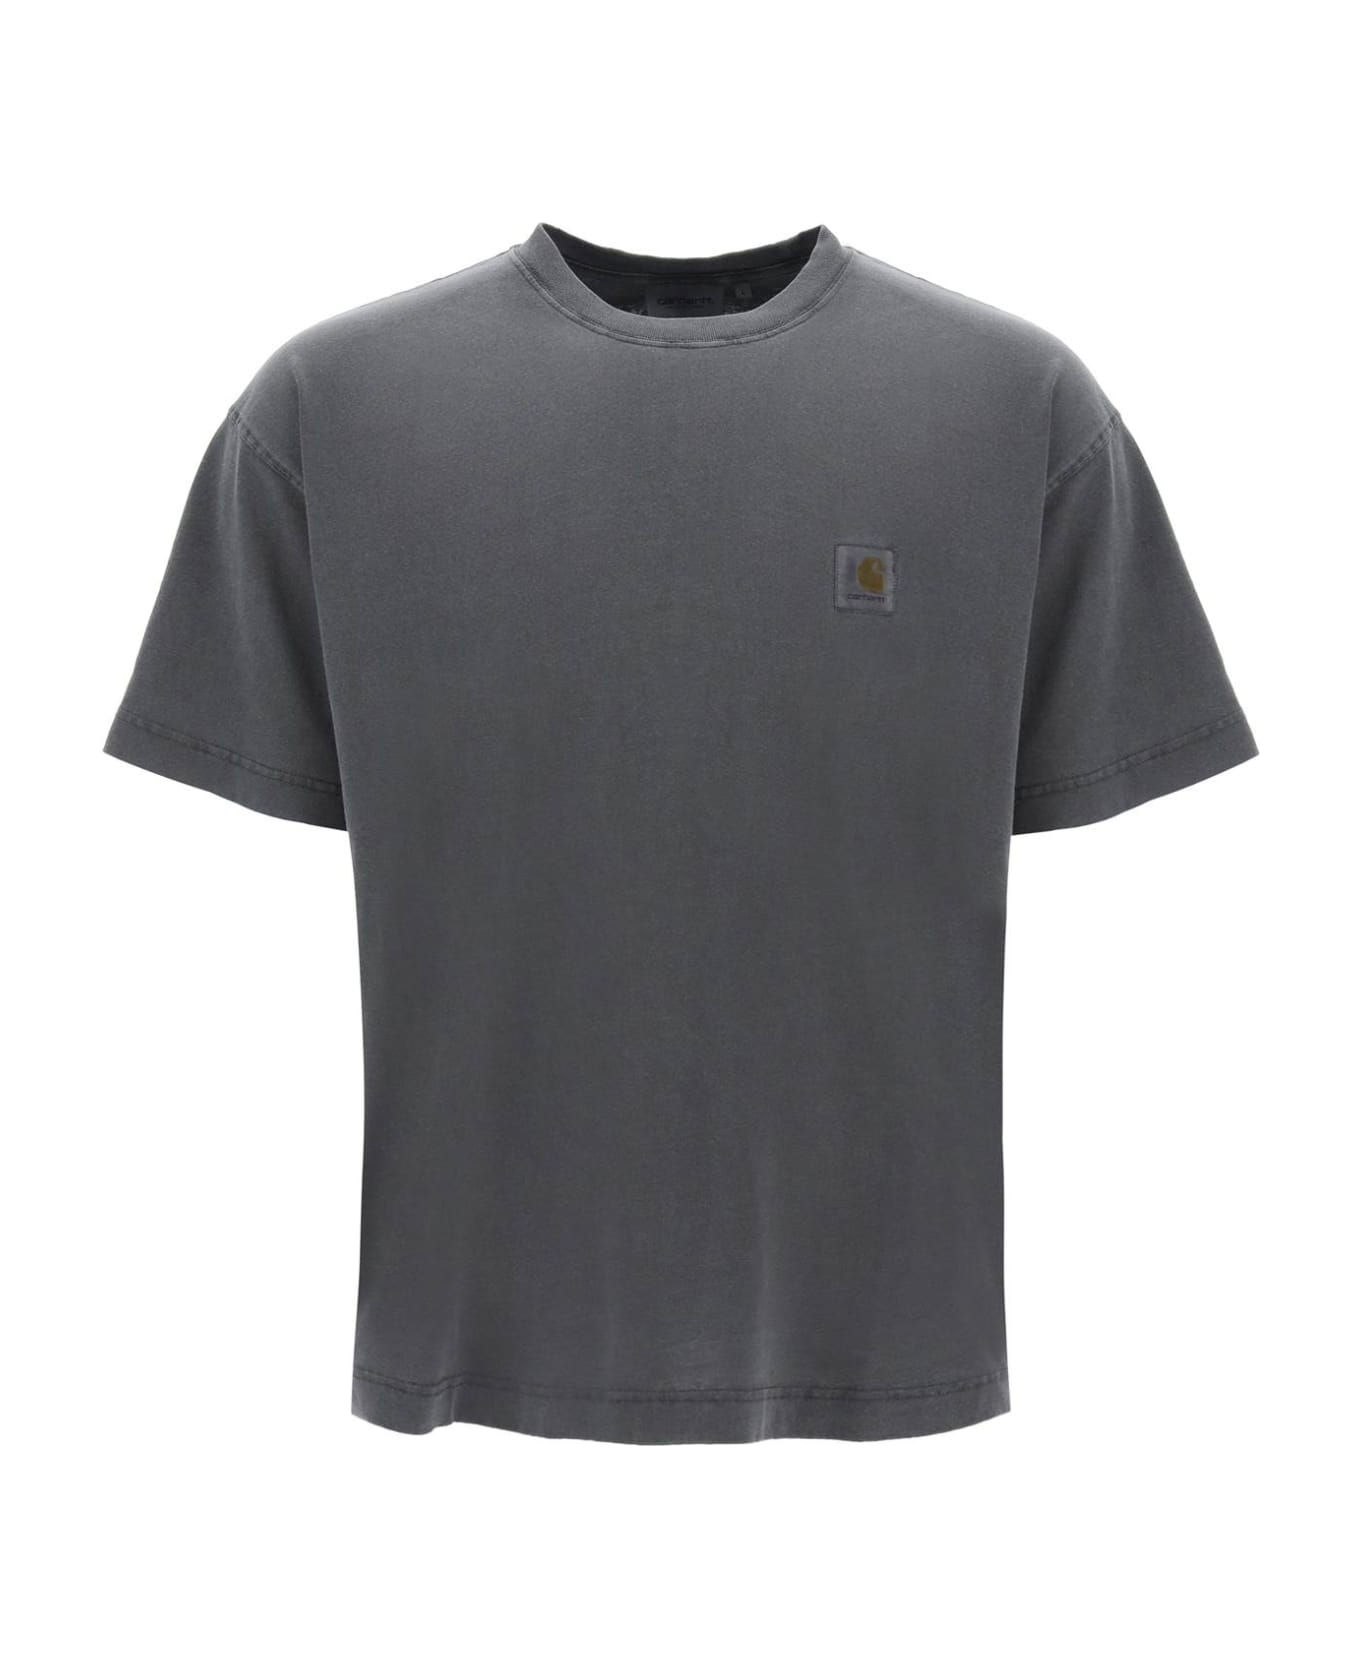 Carhartt Nelson T-shirt - Charcoal